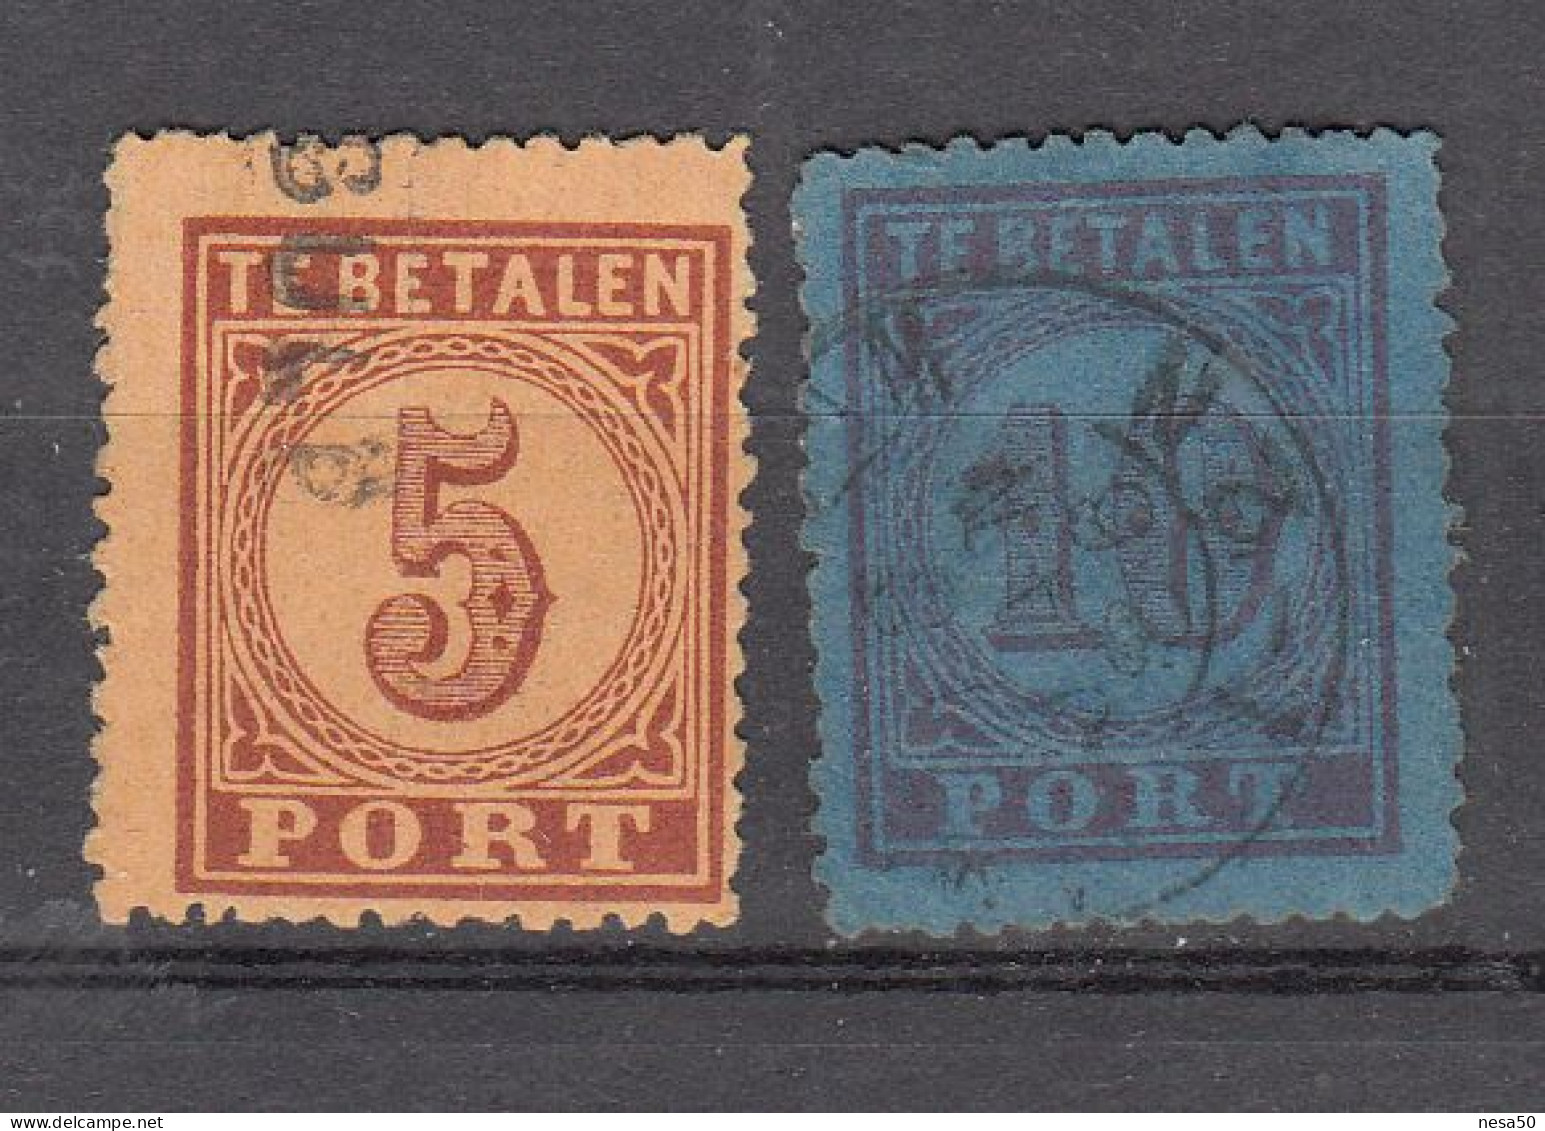 Nederland Luchtpost 1870 Nvph Nr  1 - 2, Michel Nr 1 - 2,gestempeld Compleet - Poste Aérienne